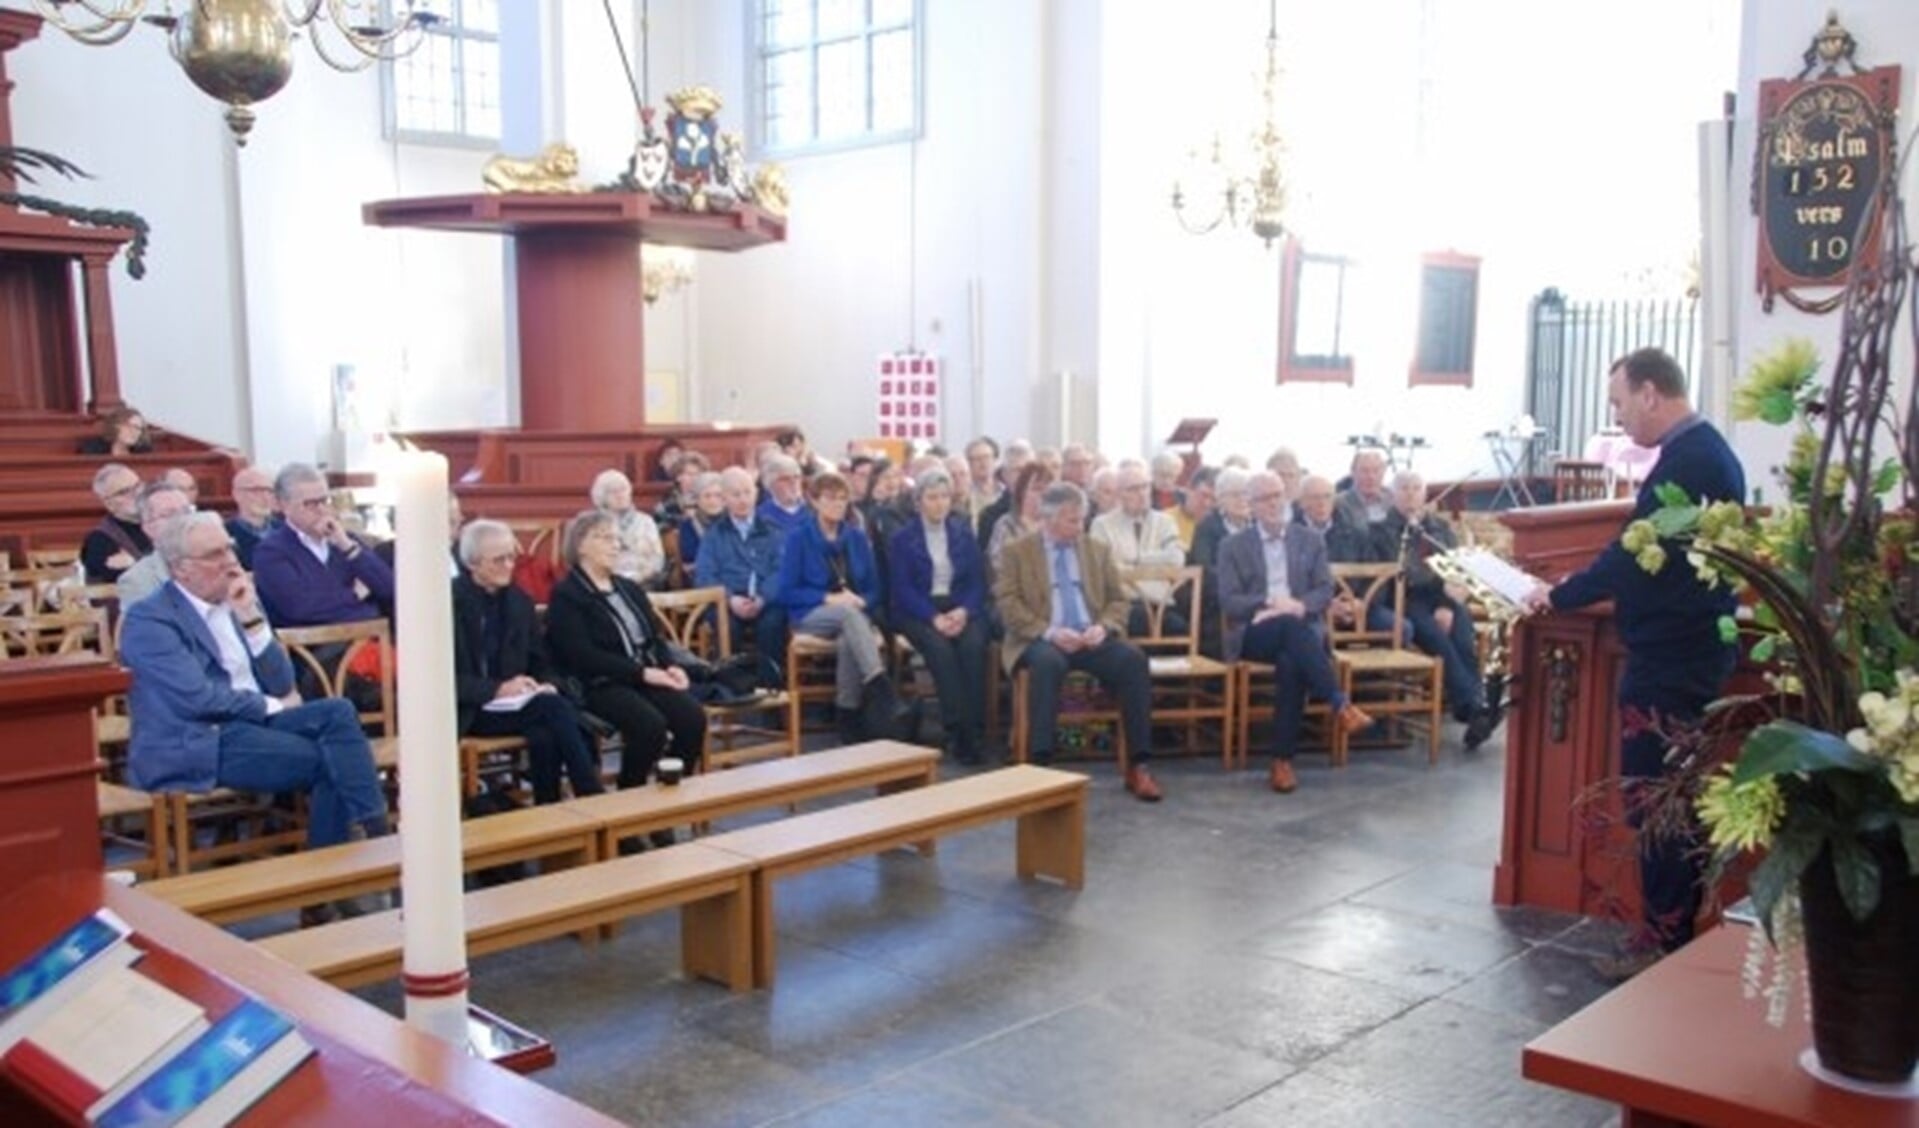 Diaken Ronald van Berkel (Nicolaasparochie) opent de Actie Kerkbalans met een oproep voor samenwerking van kerken en maatschappelijke organisaties.